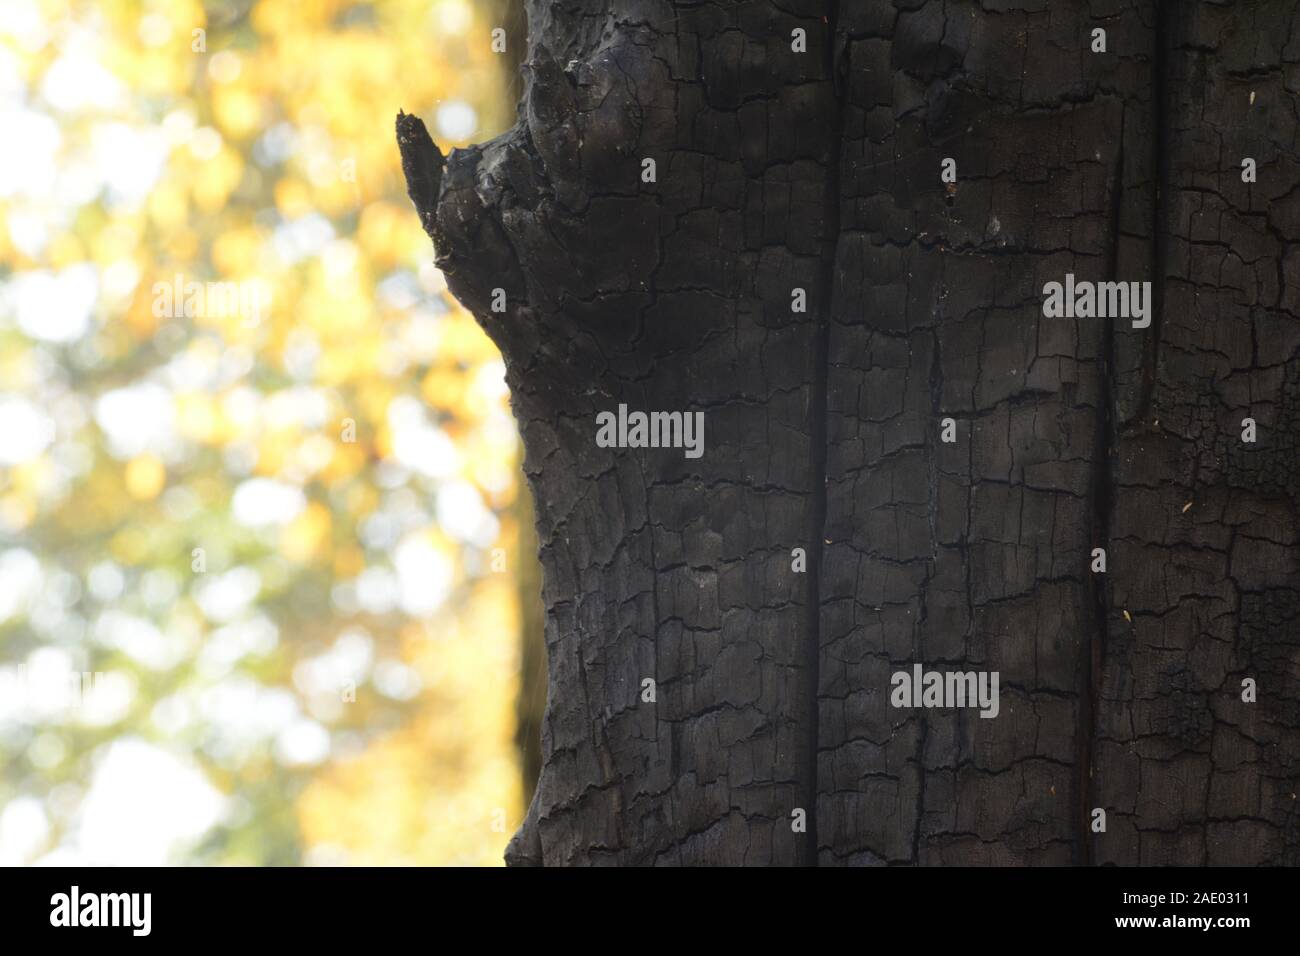 Albero bruciato tronco davanti a foglie di autunno, dettaglio di ripresa macro di stagione autunno fotografia Foto Stock